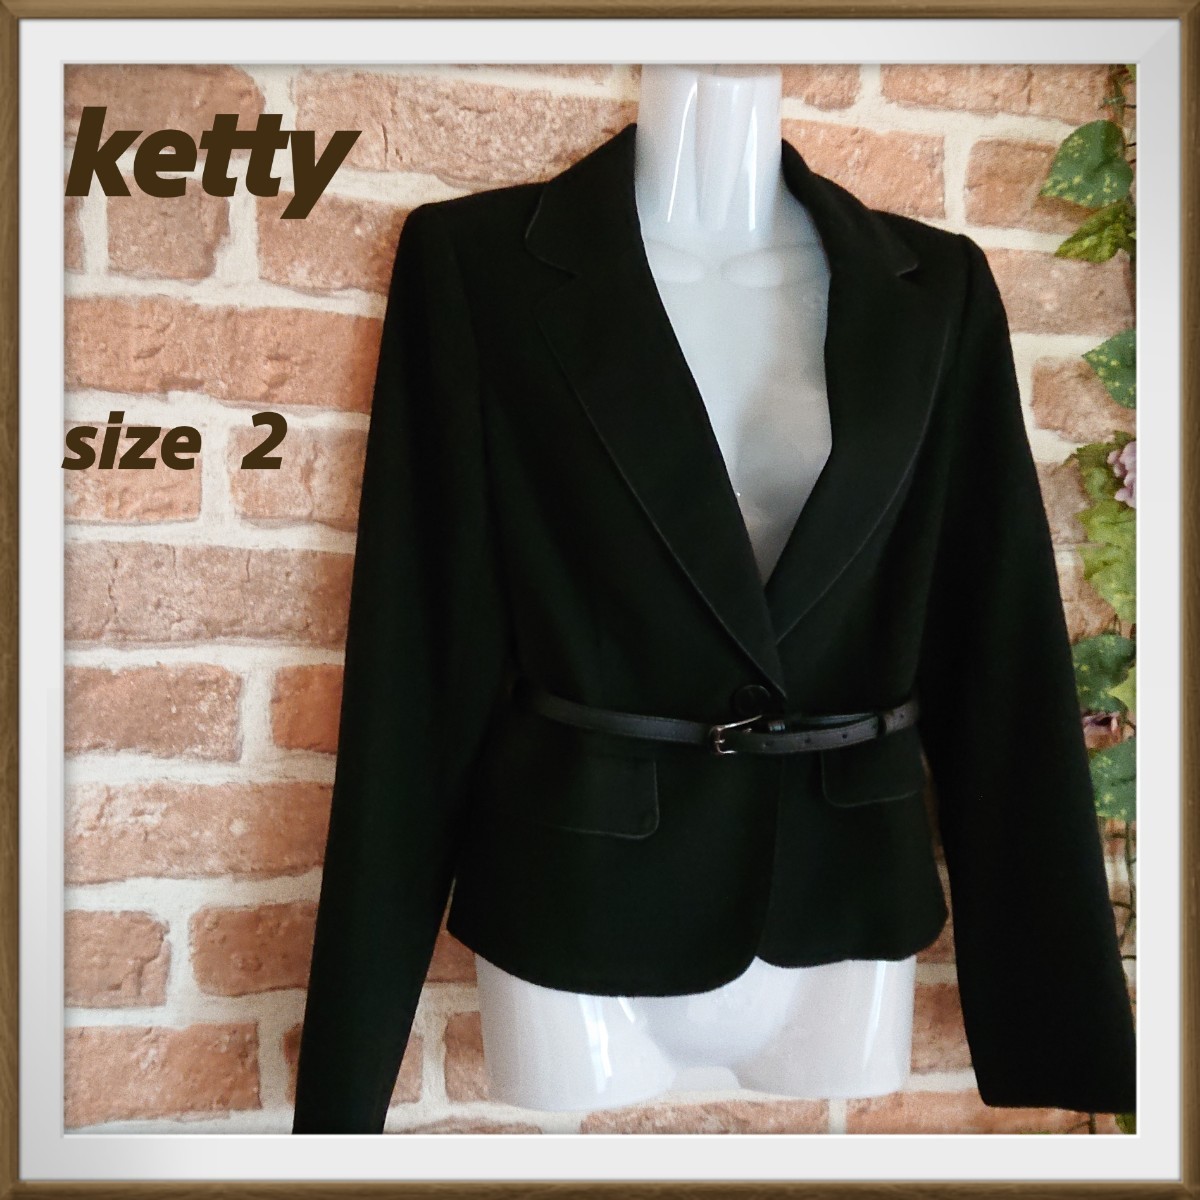 【ketty】ケティ  テーラードジャケット  ベルト付き  サイズ2